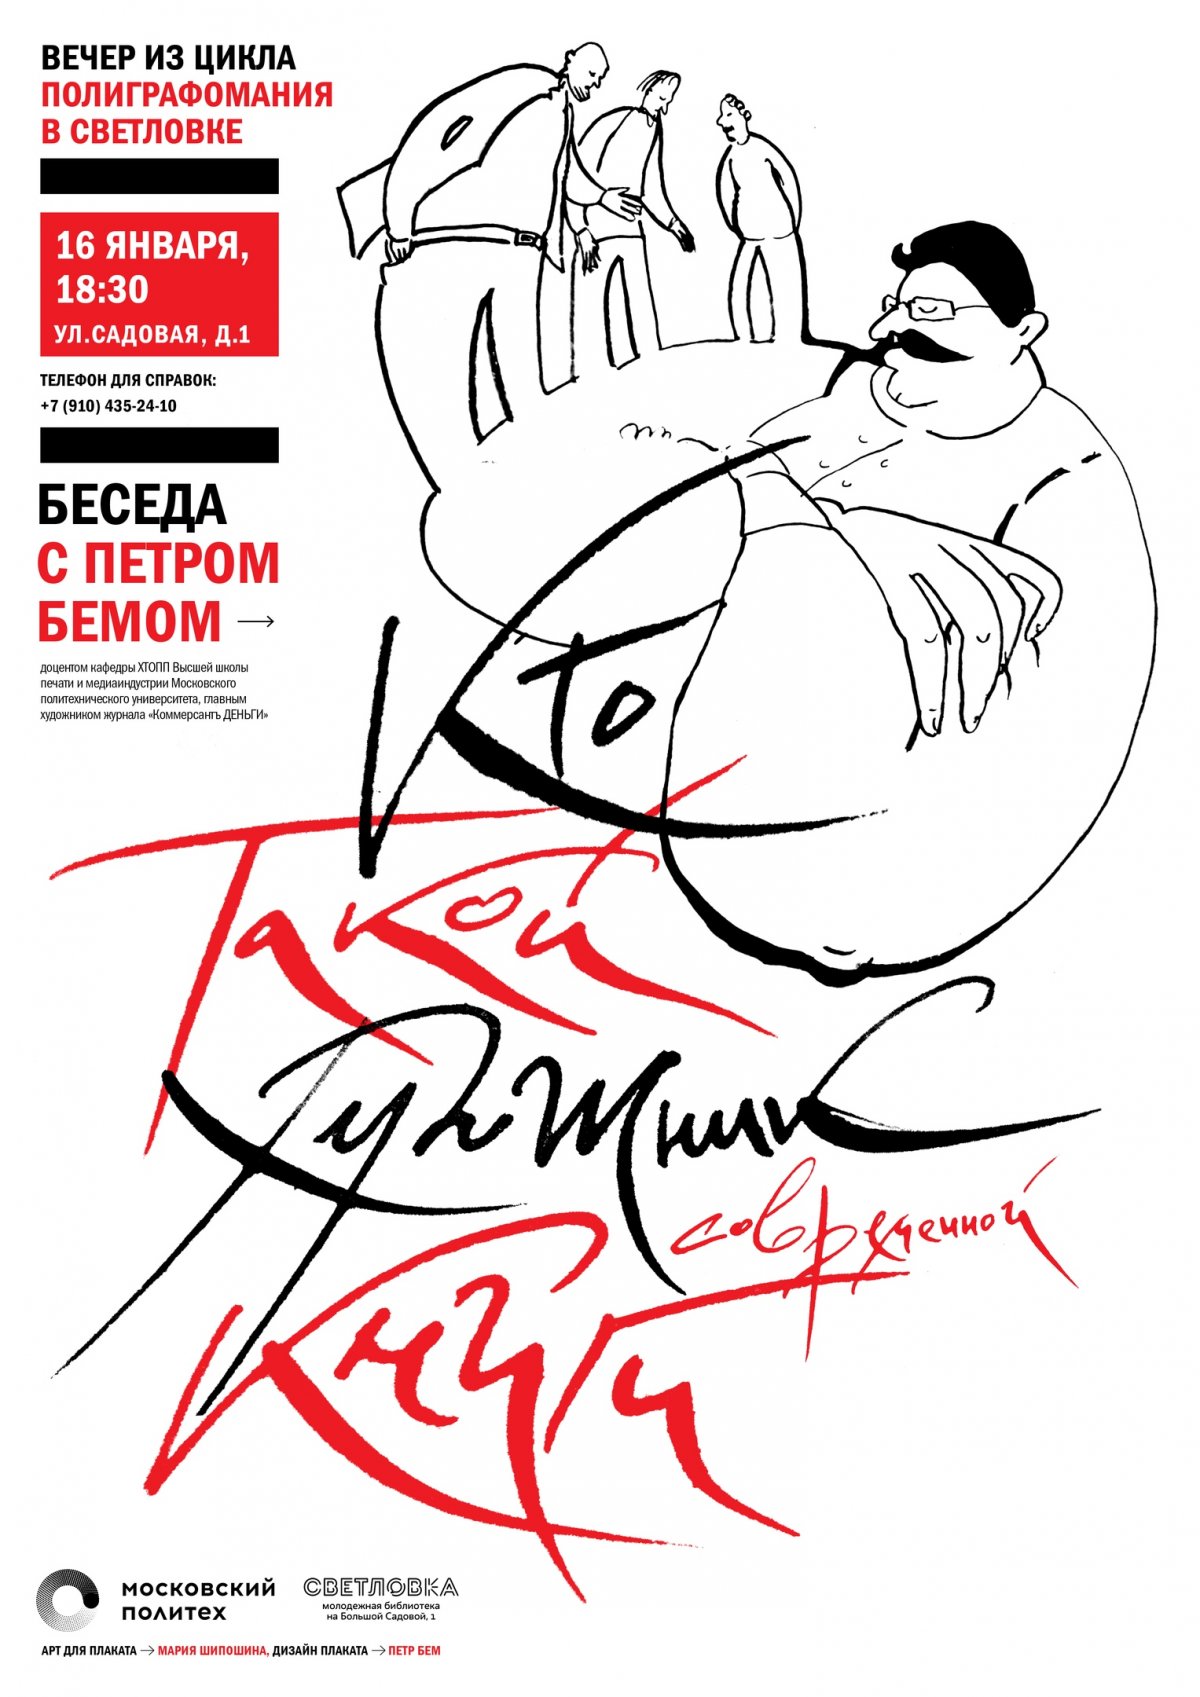 16 января в рамках цикла "Полиграфомания" состоится творческий вечер и мастер-класс художника Петра Бема, доцента Московского Политеха.